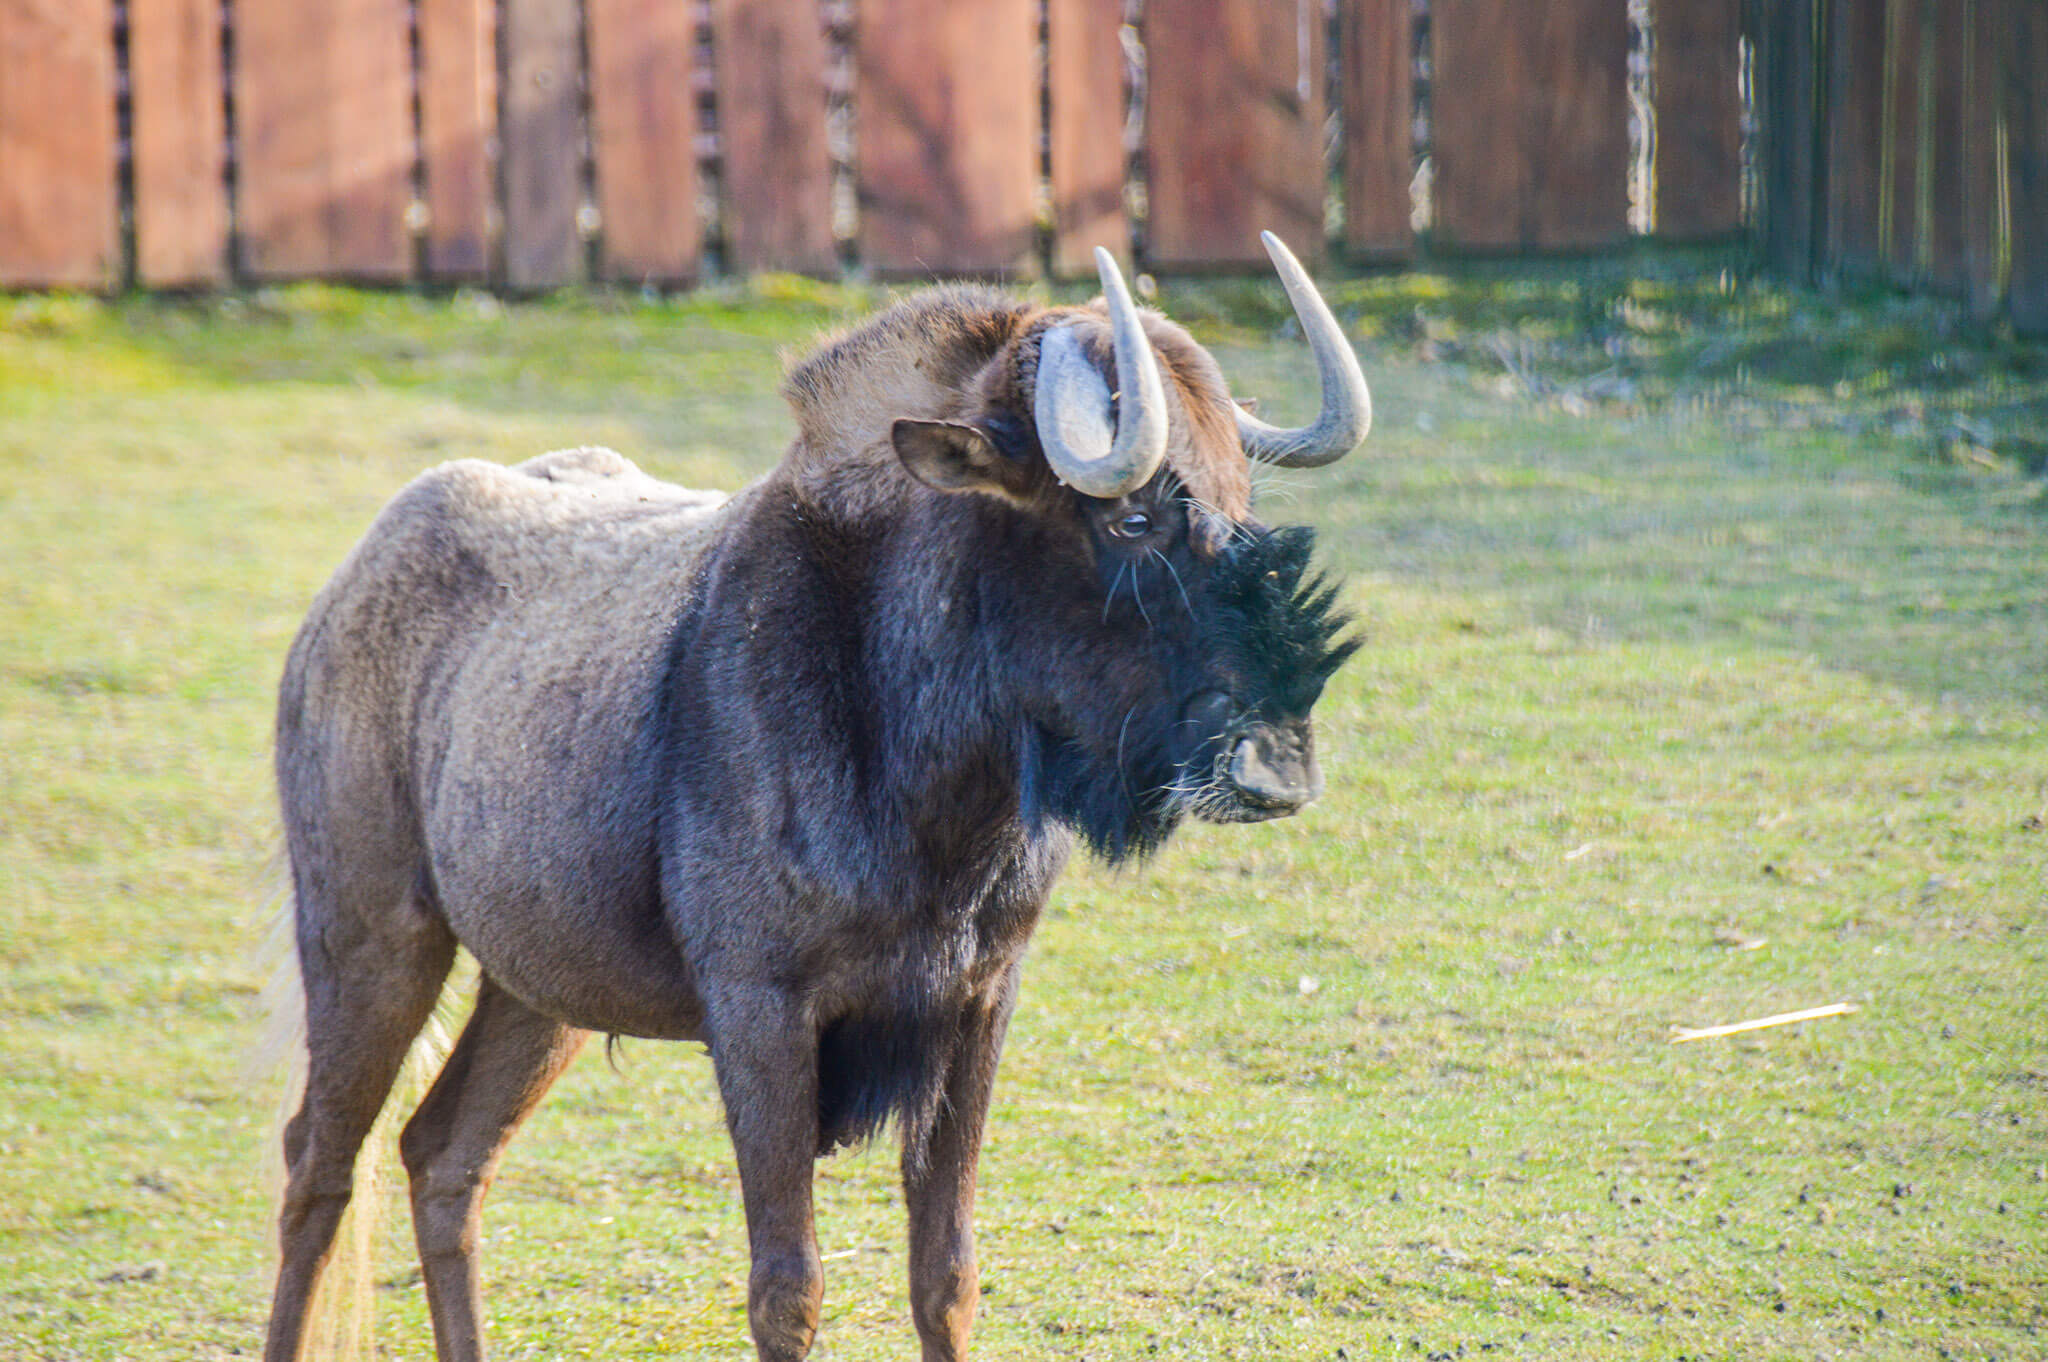 GNU rodzaj ssaka z podrodziny antylop w obrębie rodziny wołowatych.